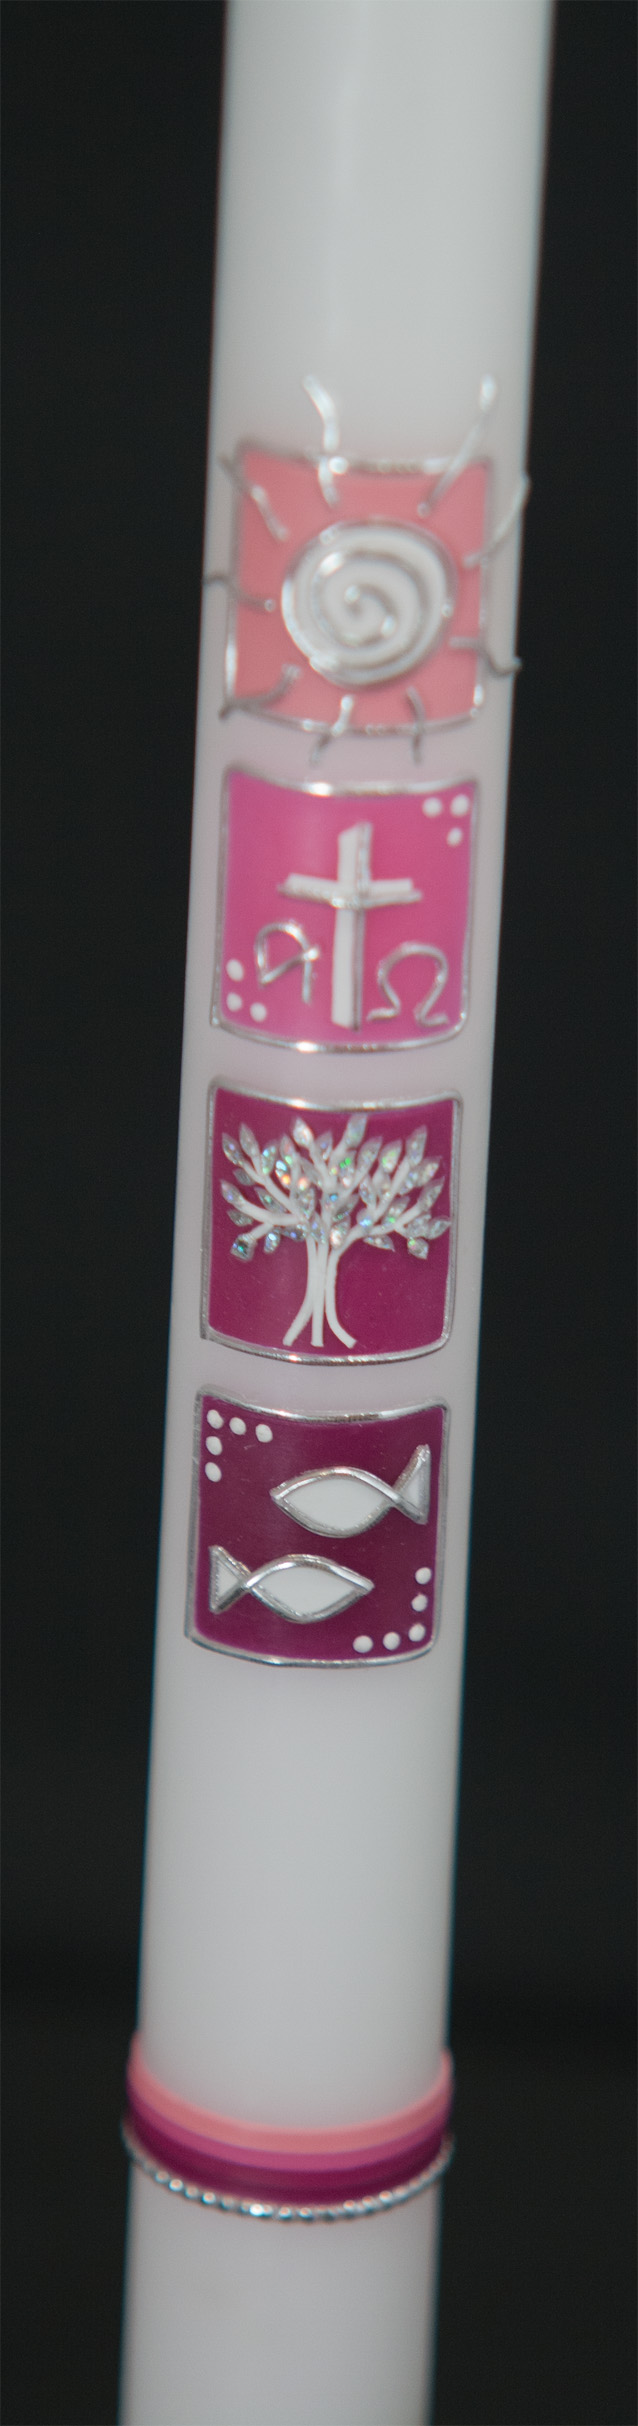 Lange Taufkerze mit Taufsymbolen - Sonne, Kreuz, Baum, Fisch - in verschiedenen Rosatönen.